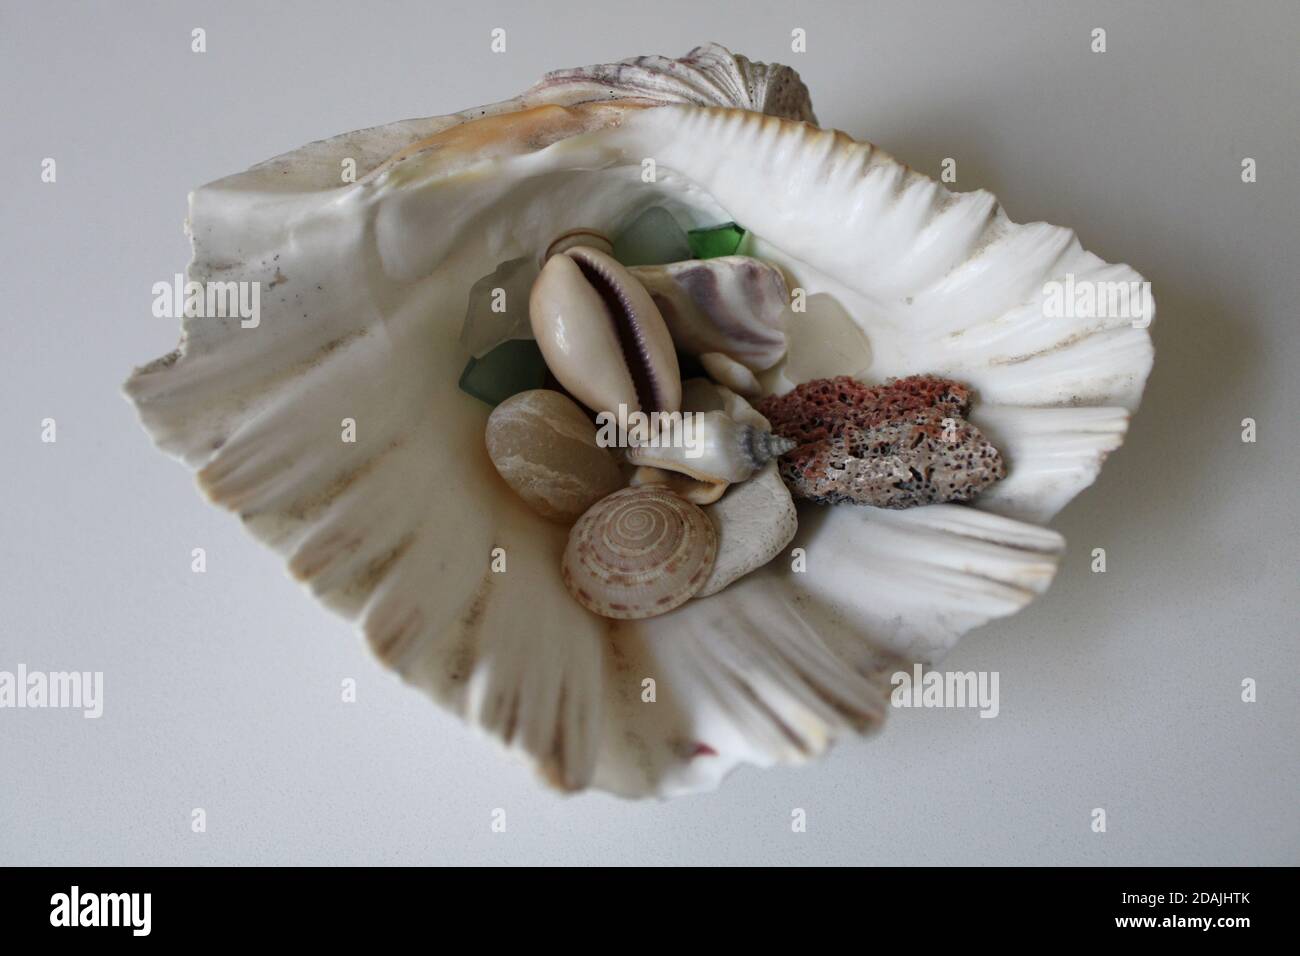 Questa mezza conchiglia contiene una piccola collezione di conchiglie, vetro marino e altri oggetti trovati durante la beachcombing. Foto Stock